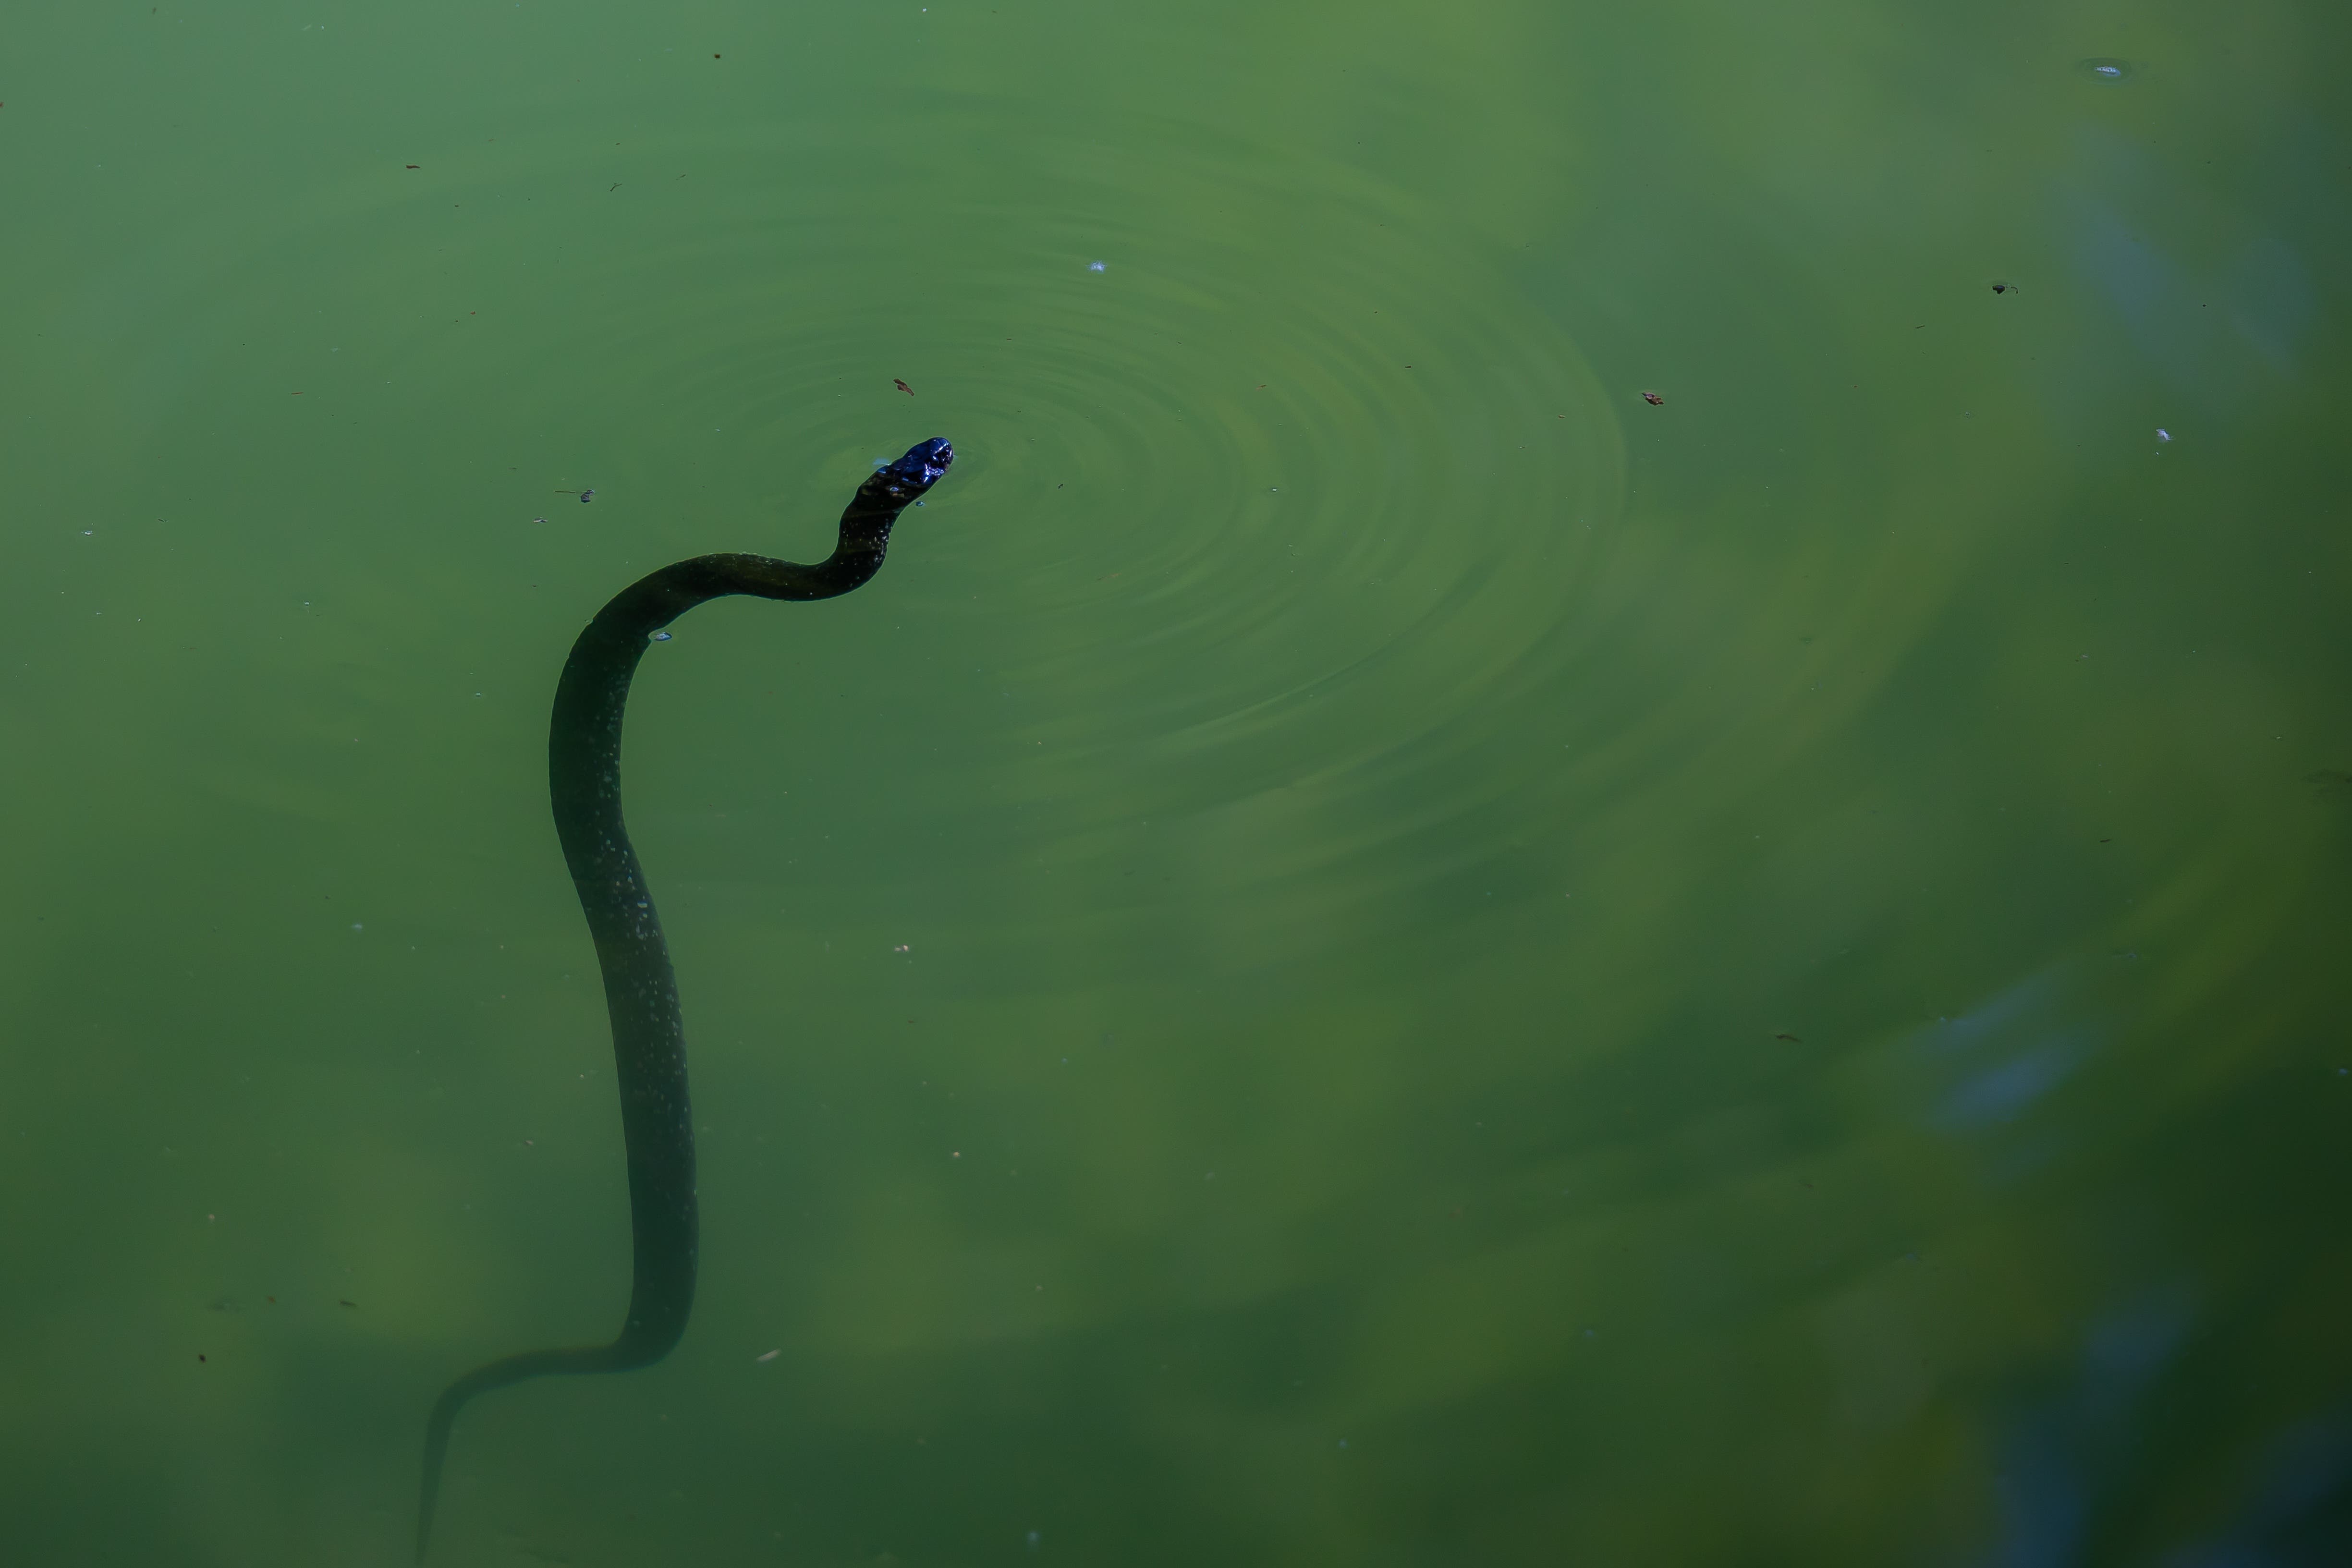 Eine Ringelnatter durchschwimmt das grüne Wasser des Tümpels bei Glanzenberg, immer einen Zungenschlag Richtung den jungen Haubentauchern.